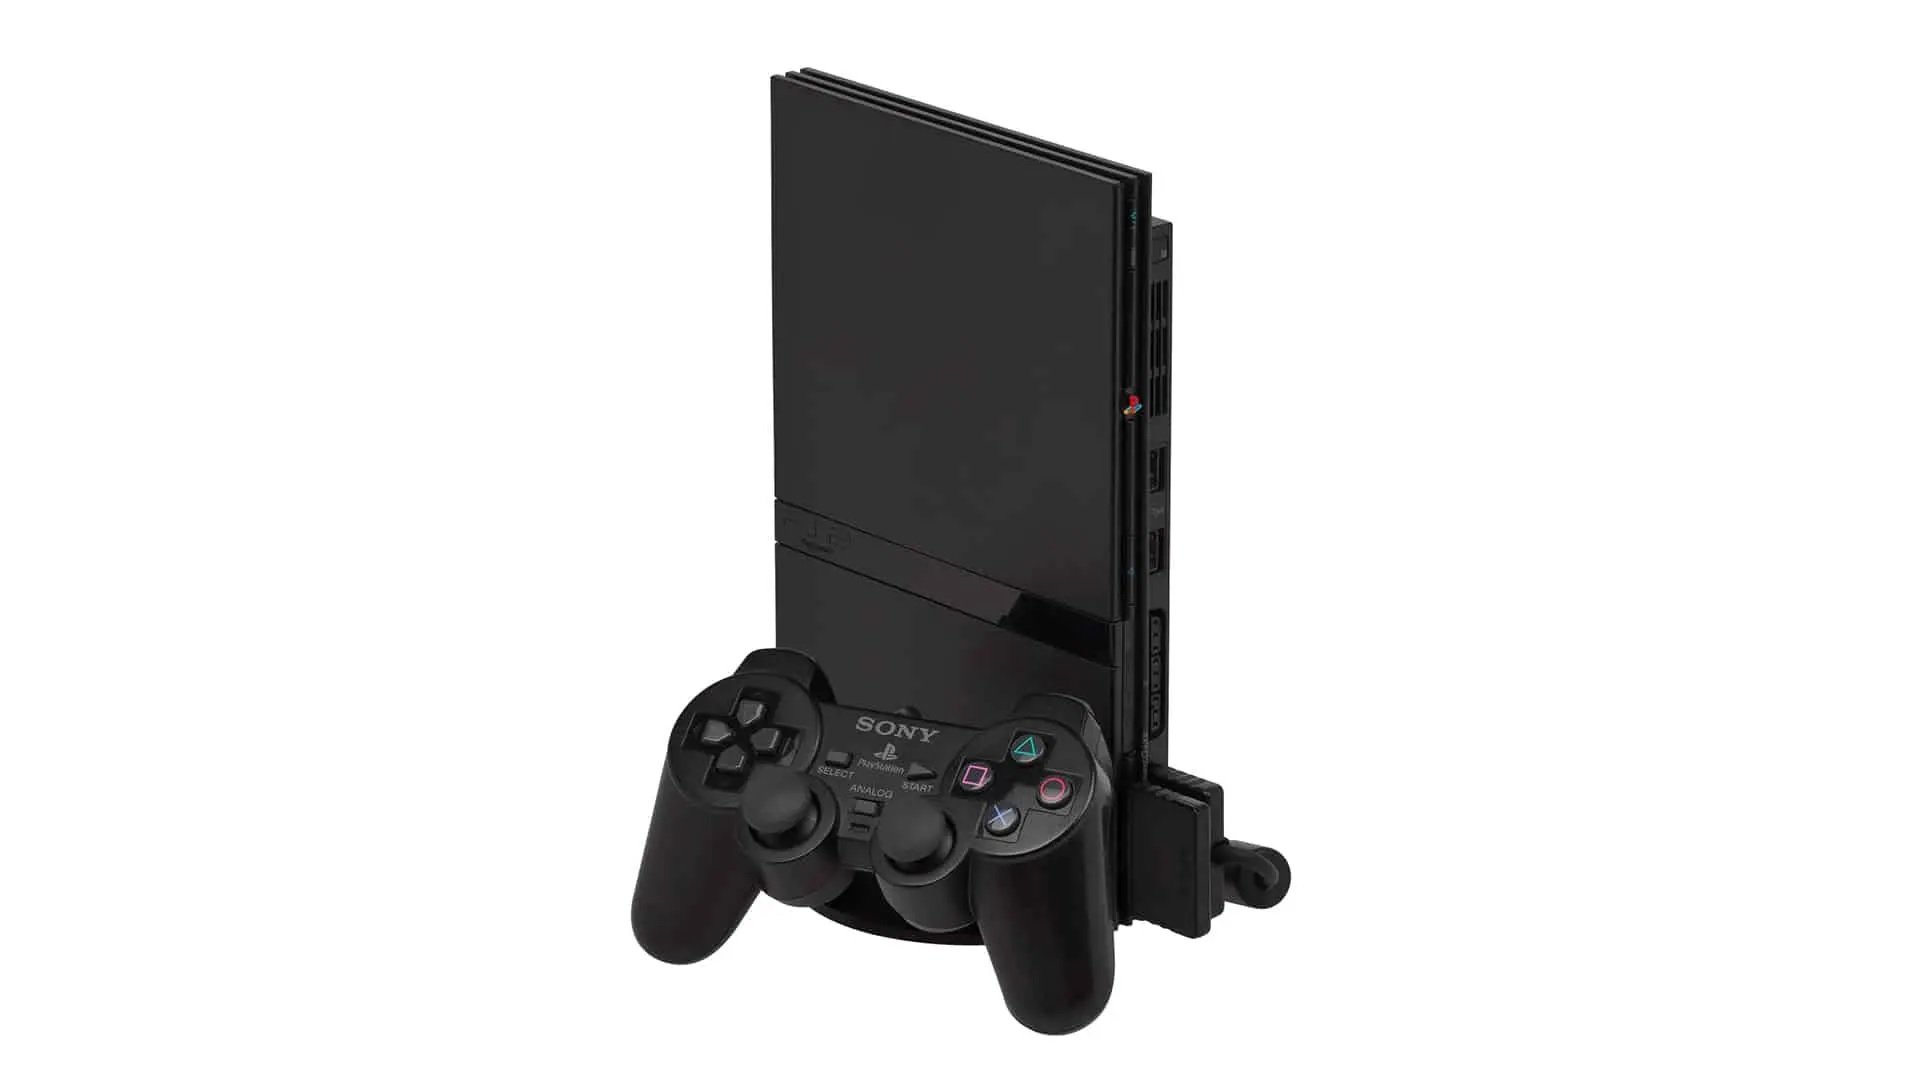 PlayStation 2: relembre os melhores games exclusivos do console